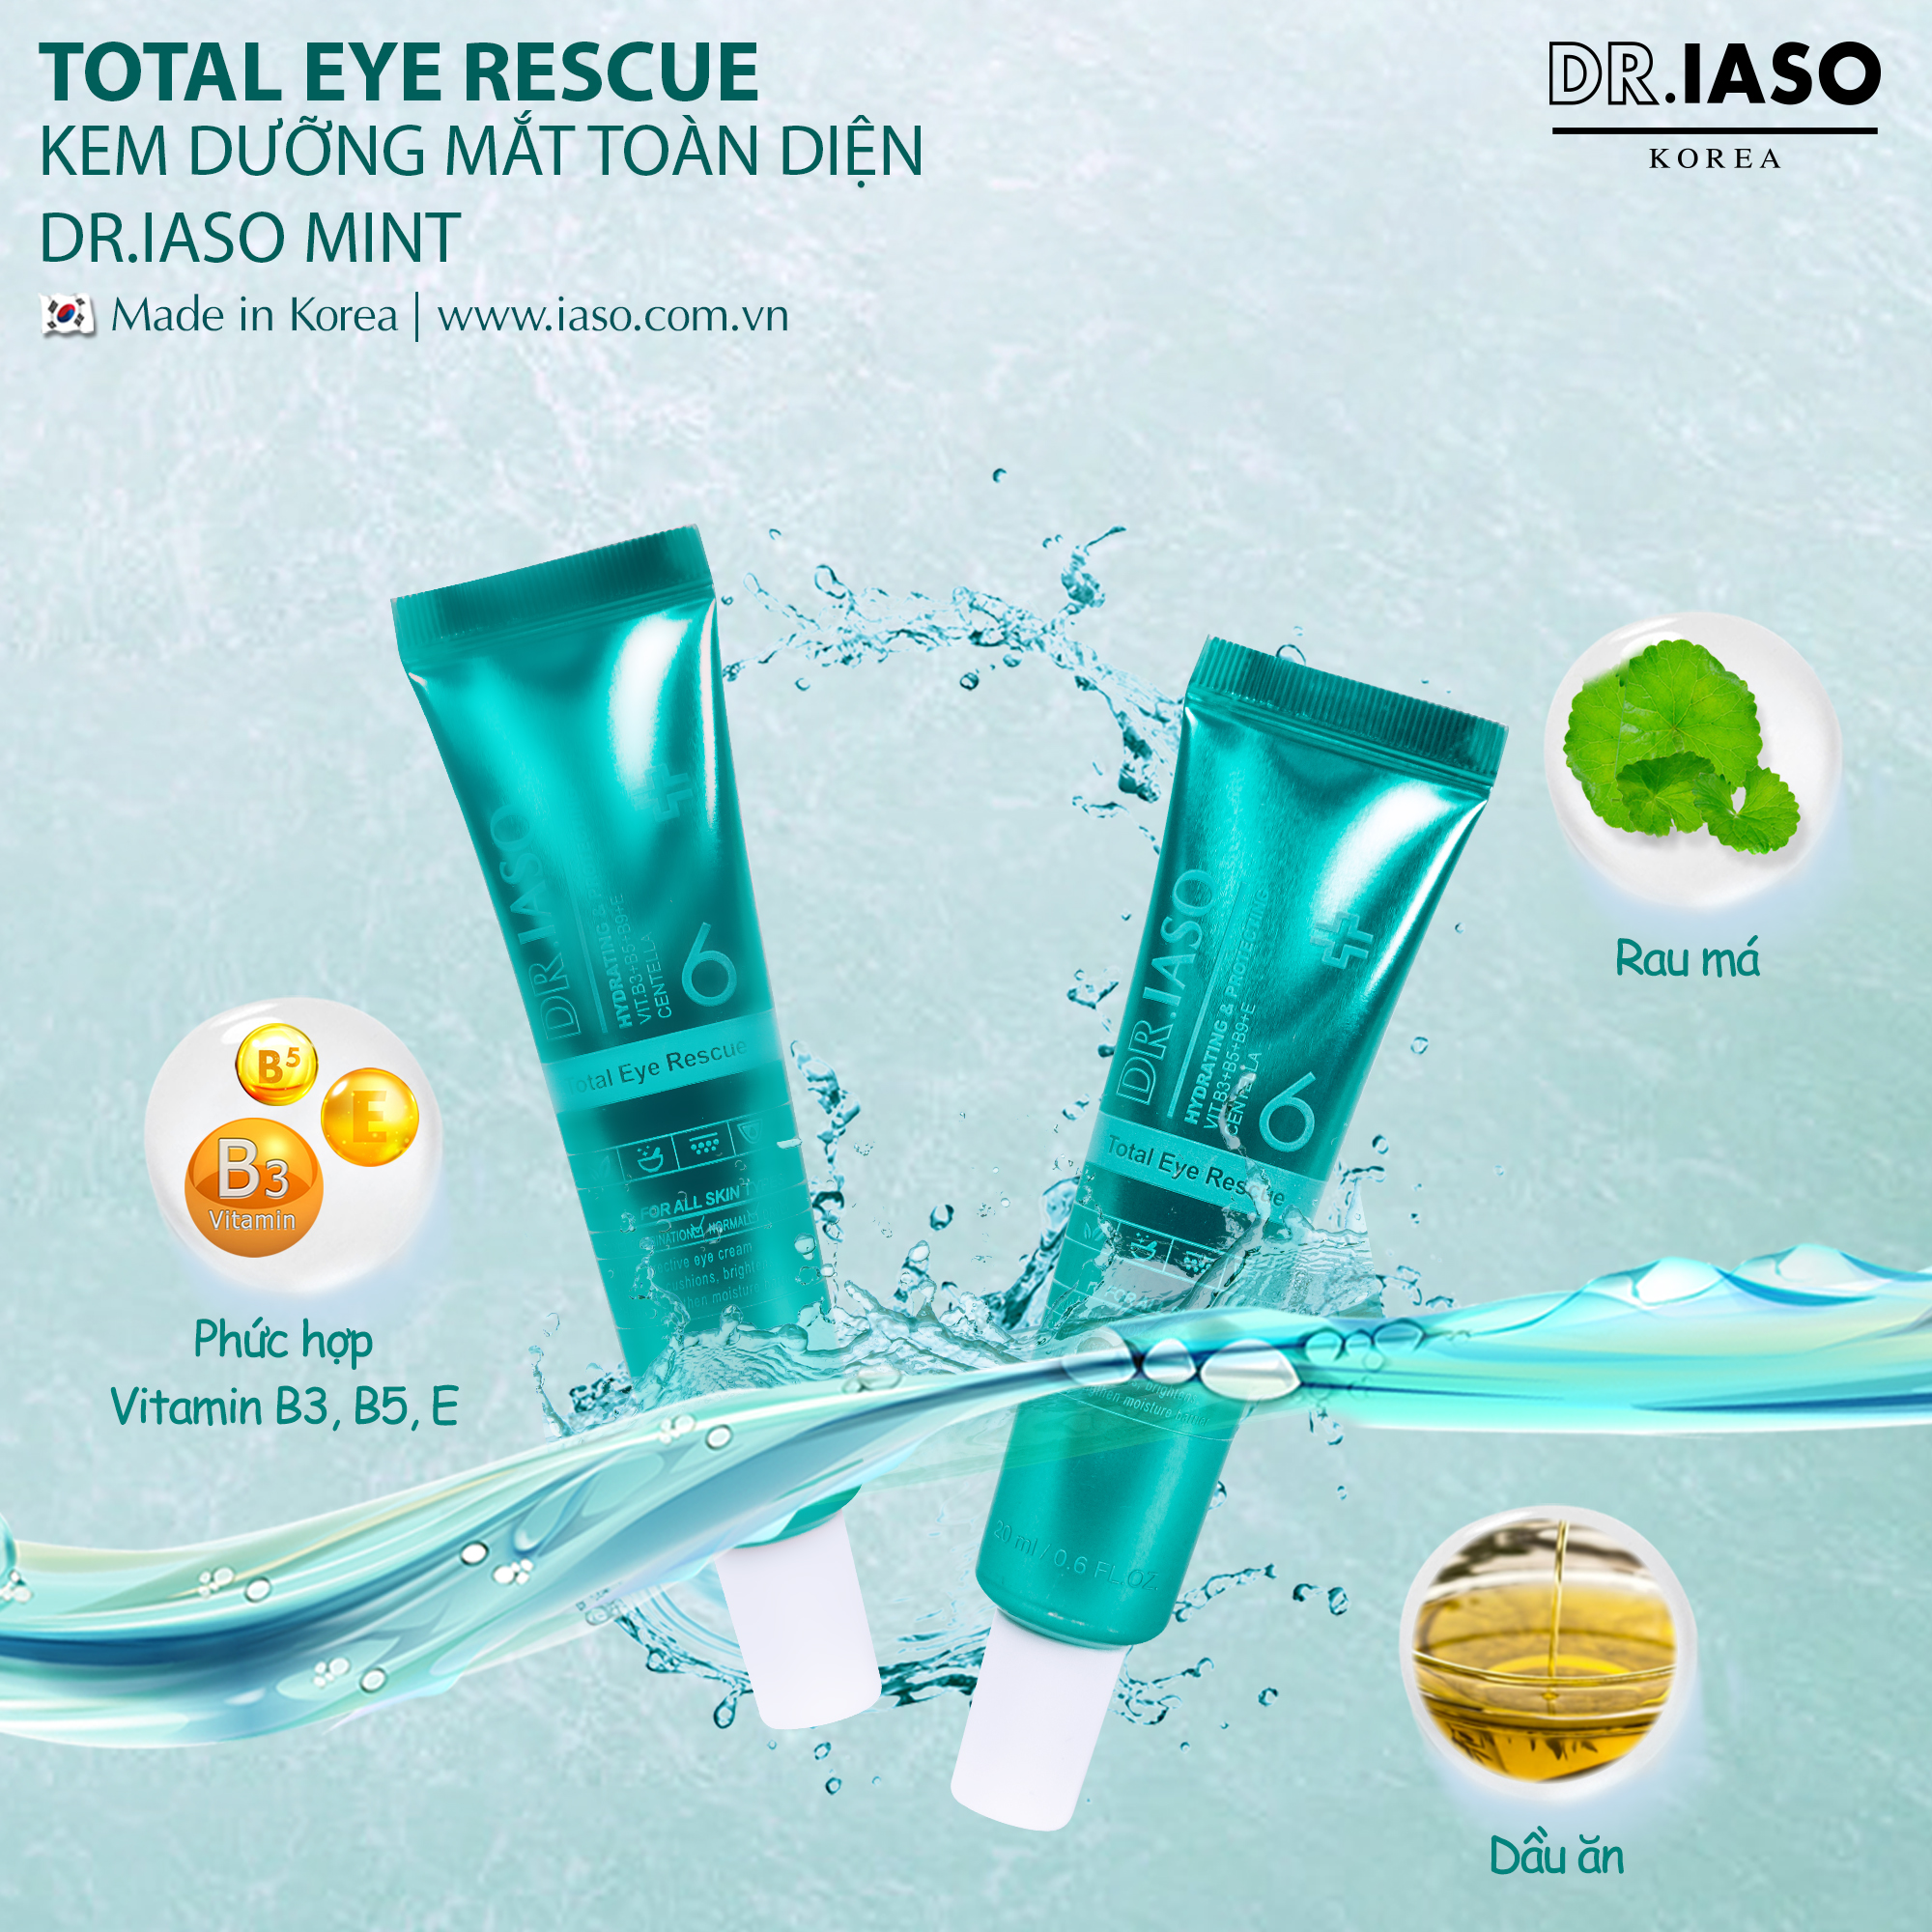 Chăm sóc vùng mắt với Dr.Iaso